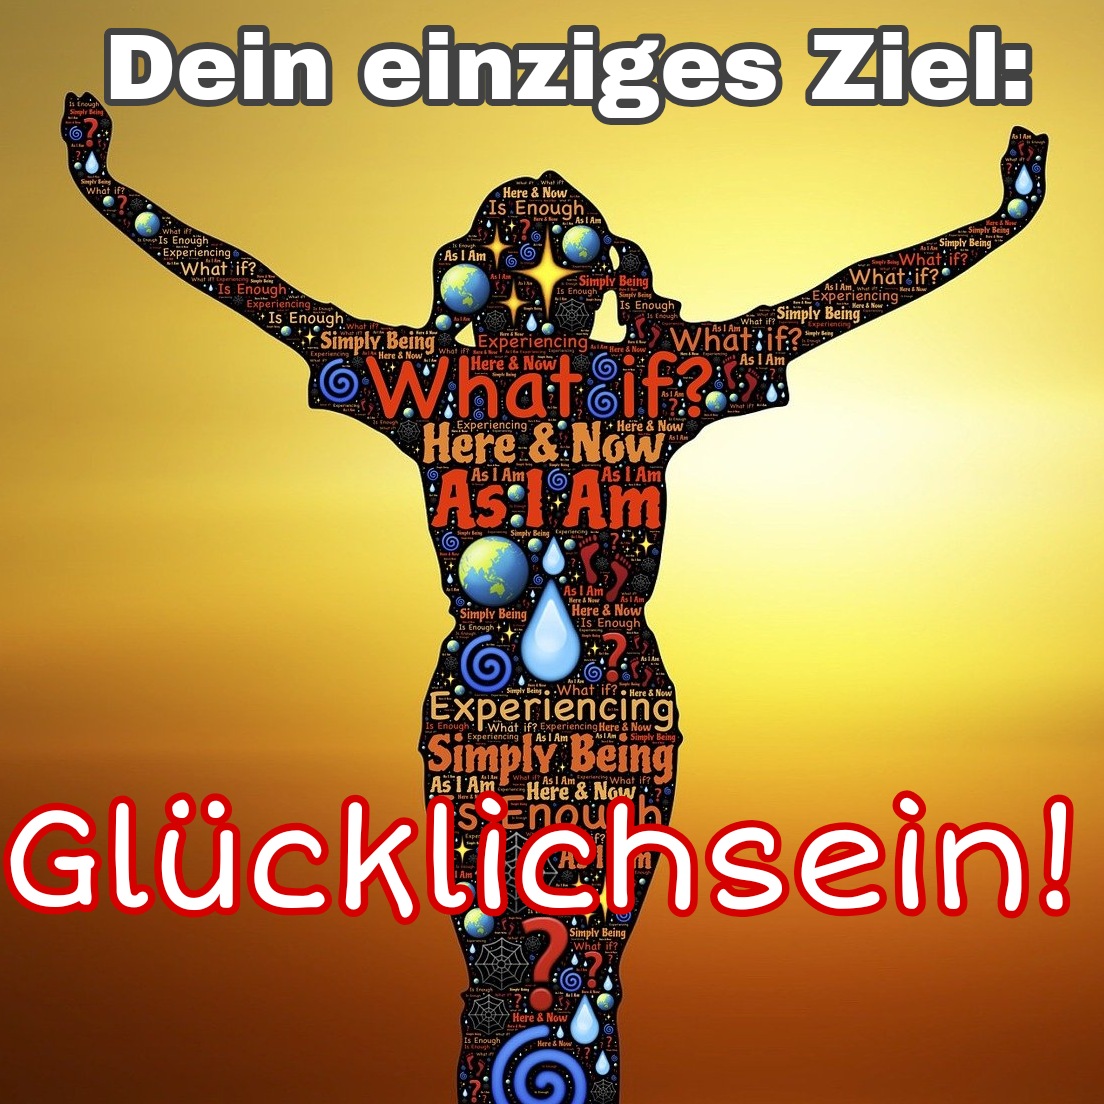 You are currently viewing Dein einziges Ziel: Glücklichsein…